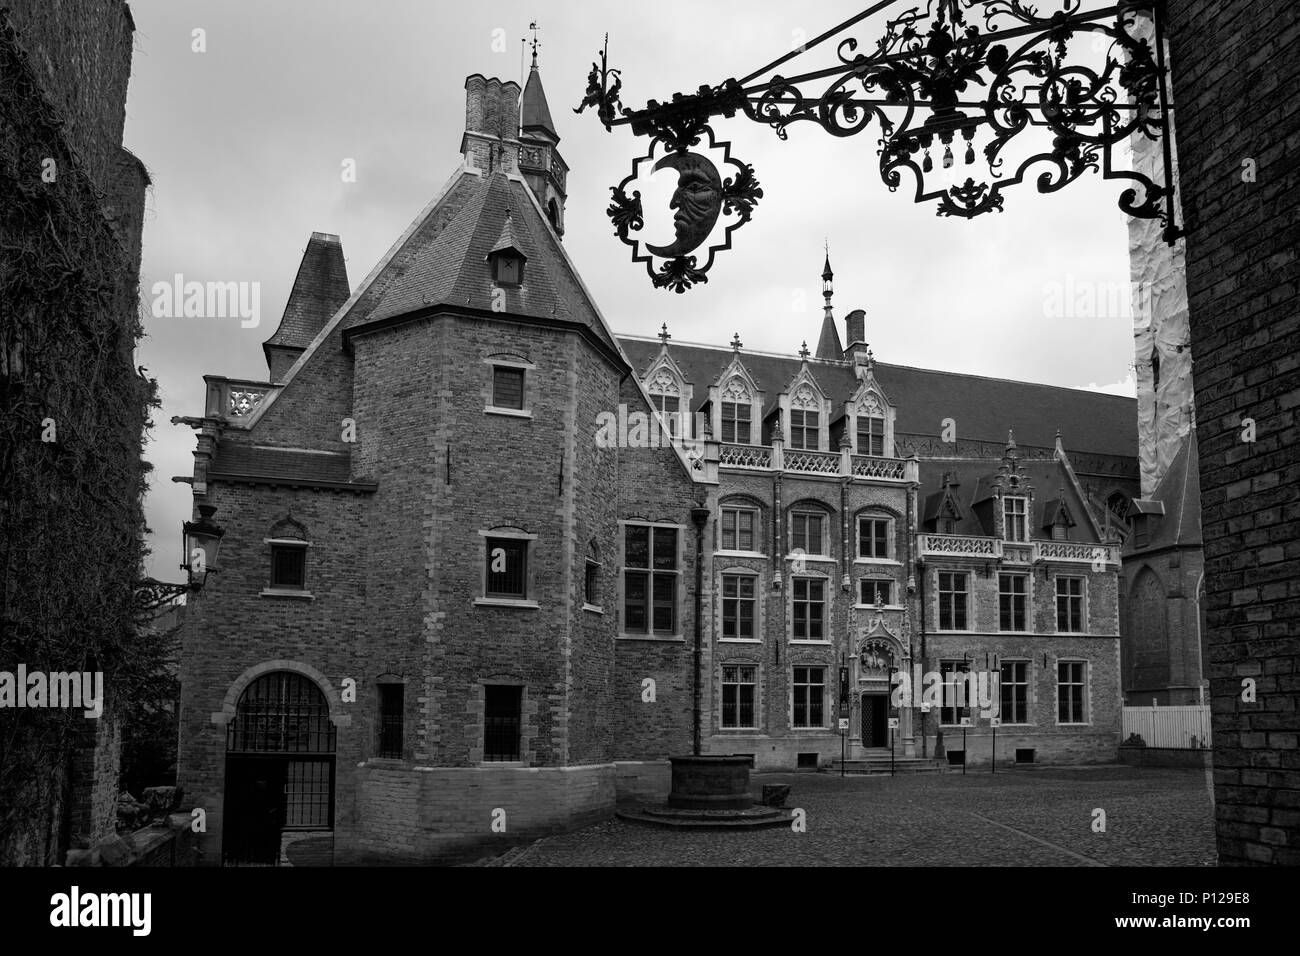 Elaborare elementi in ferro battuto con mezza luna sopra l'entrata del Palazzo Gruuthuse, Brugge, Belgio: versione in bianco e nero Foto Stock